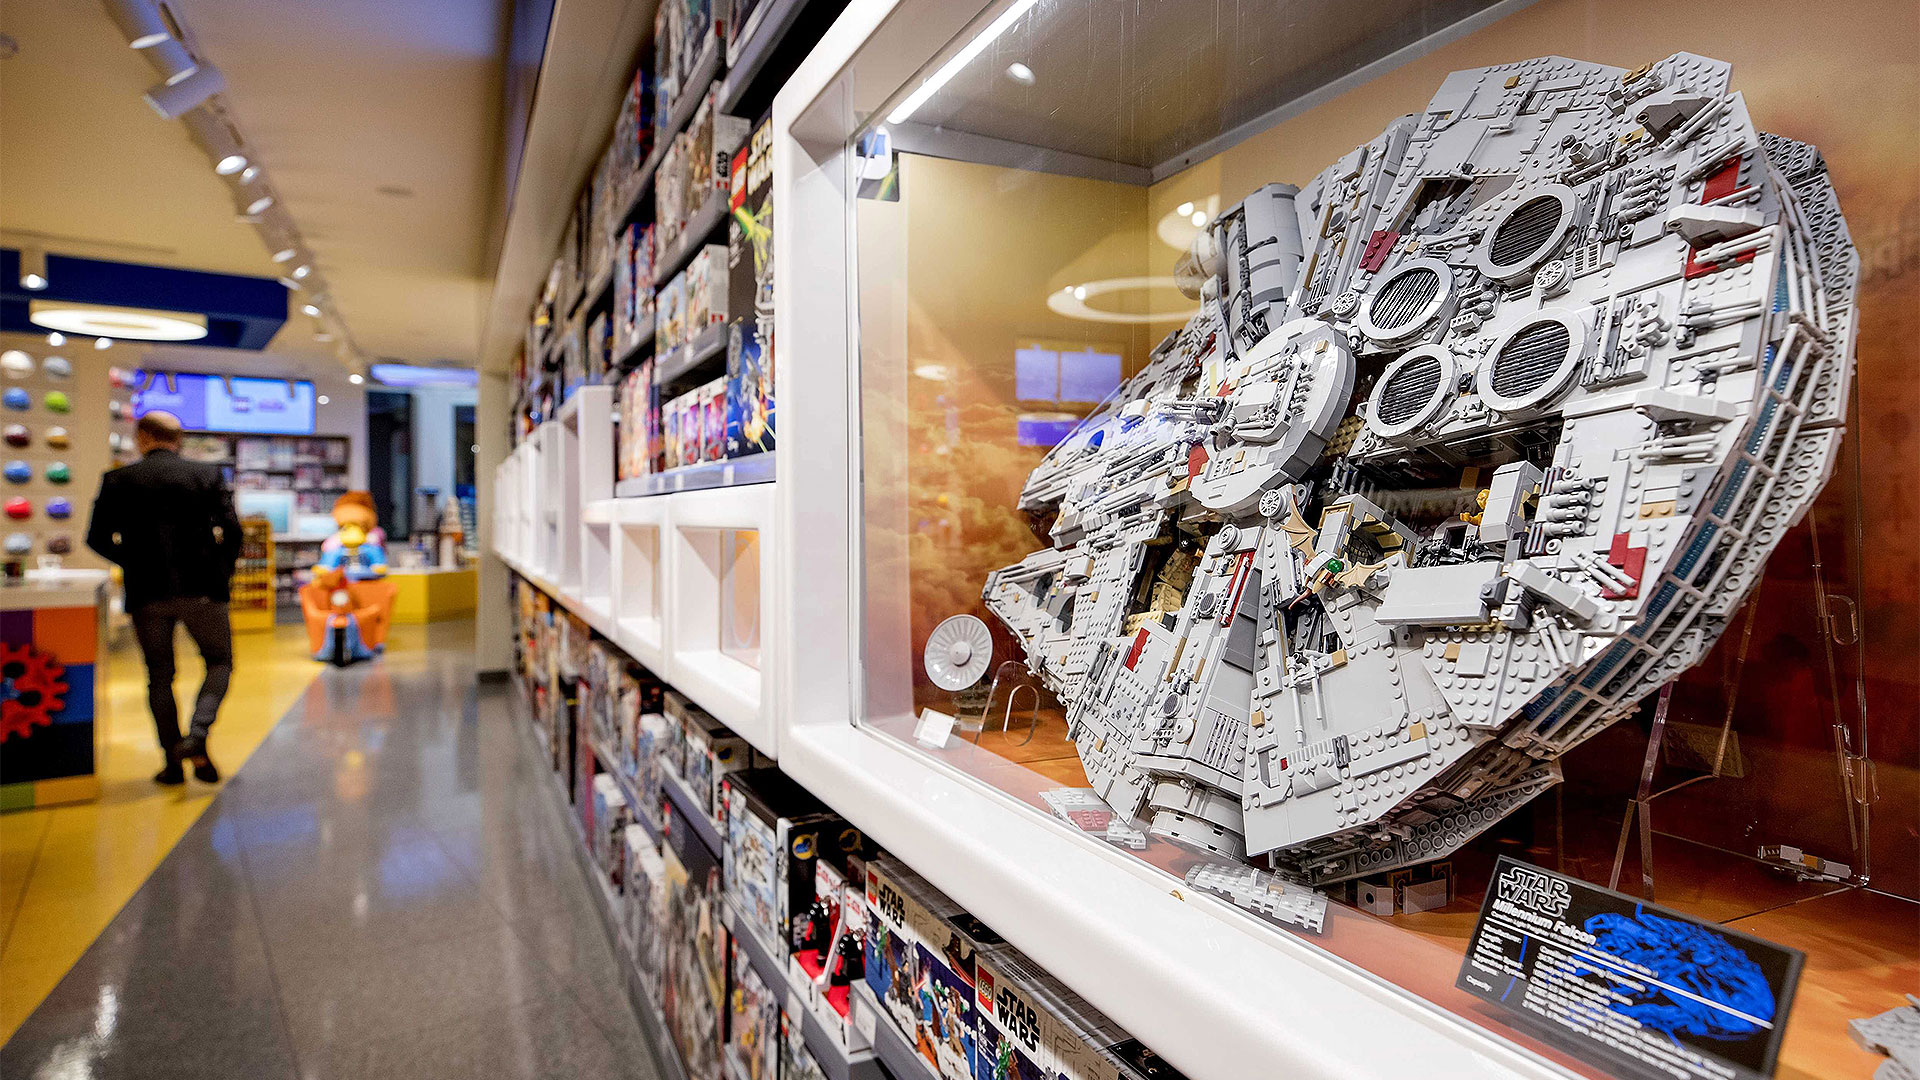 Lego-Raumschiff Millenium Falcon in einem Lego-Shop | picture alliance / ANP